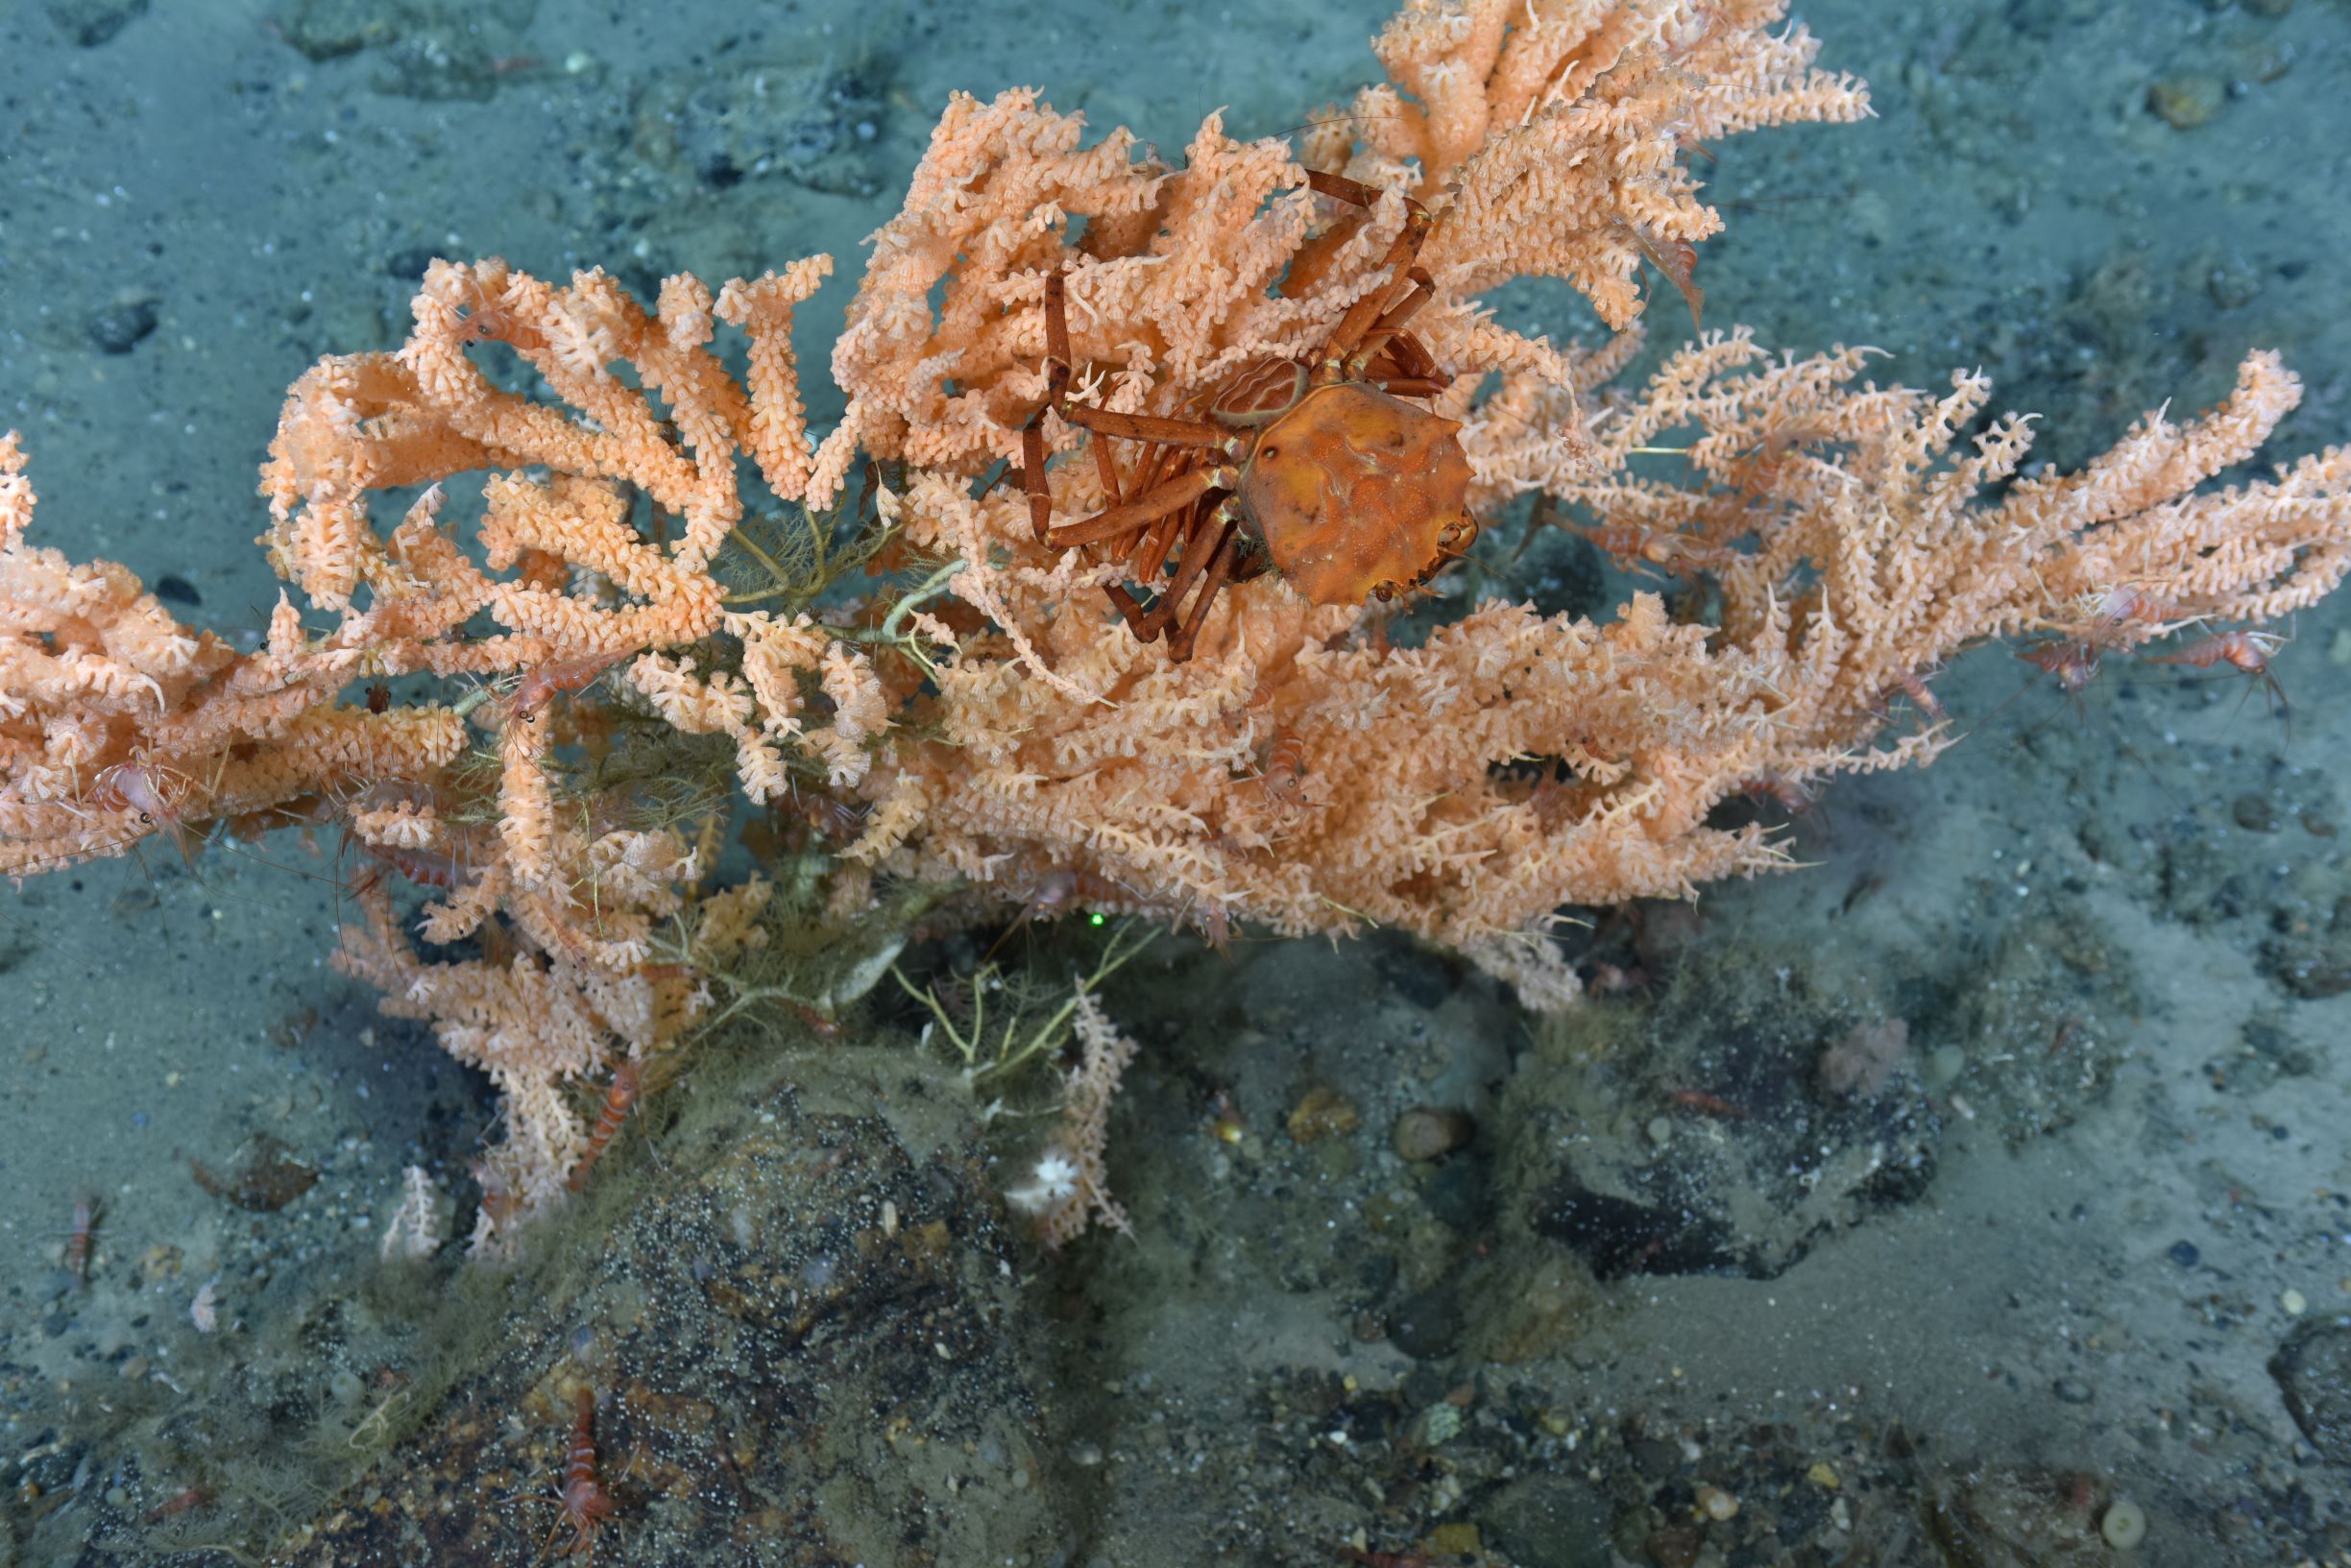 A red crab climbs Seacorn coral, Primnoa resedaeformis.